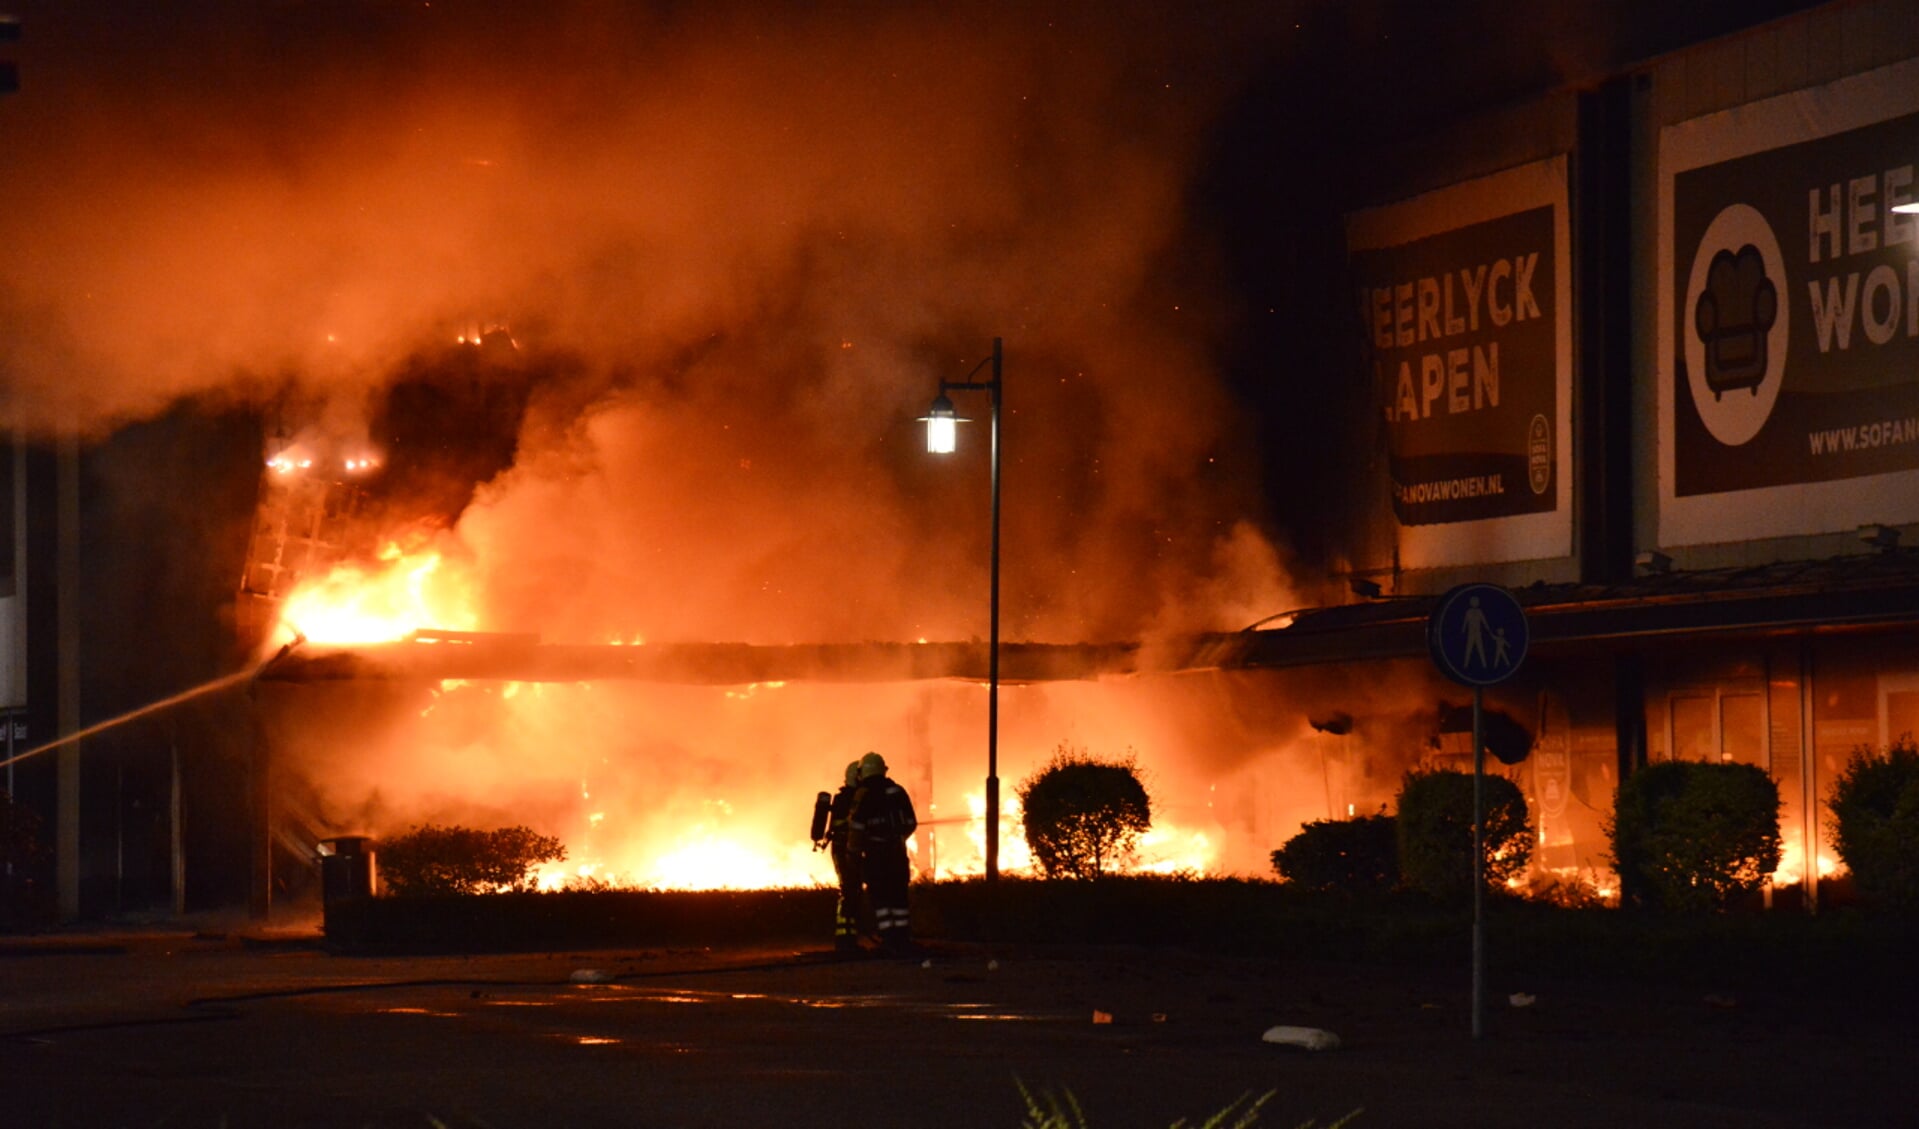  De brand woedde in het blok met Sofa Nova, Heerlyck Wonen, Heerlyck Slapen, Bankstel XL en Lampidee.